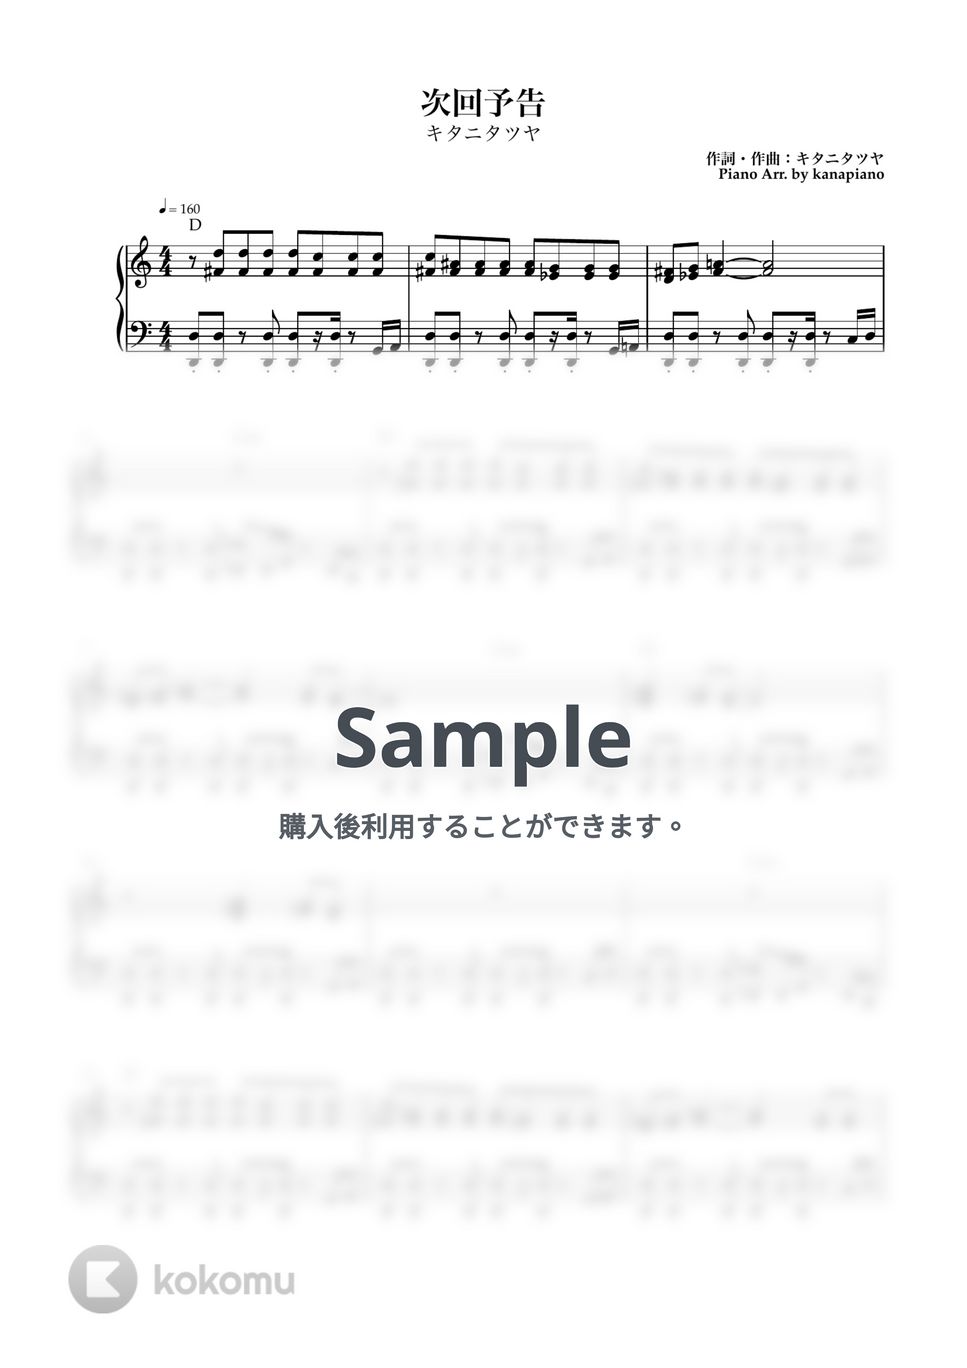 キタニタツヤ - 次回予告 (ピアノソロ/次回予告) by kanapiano